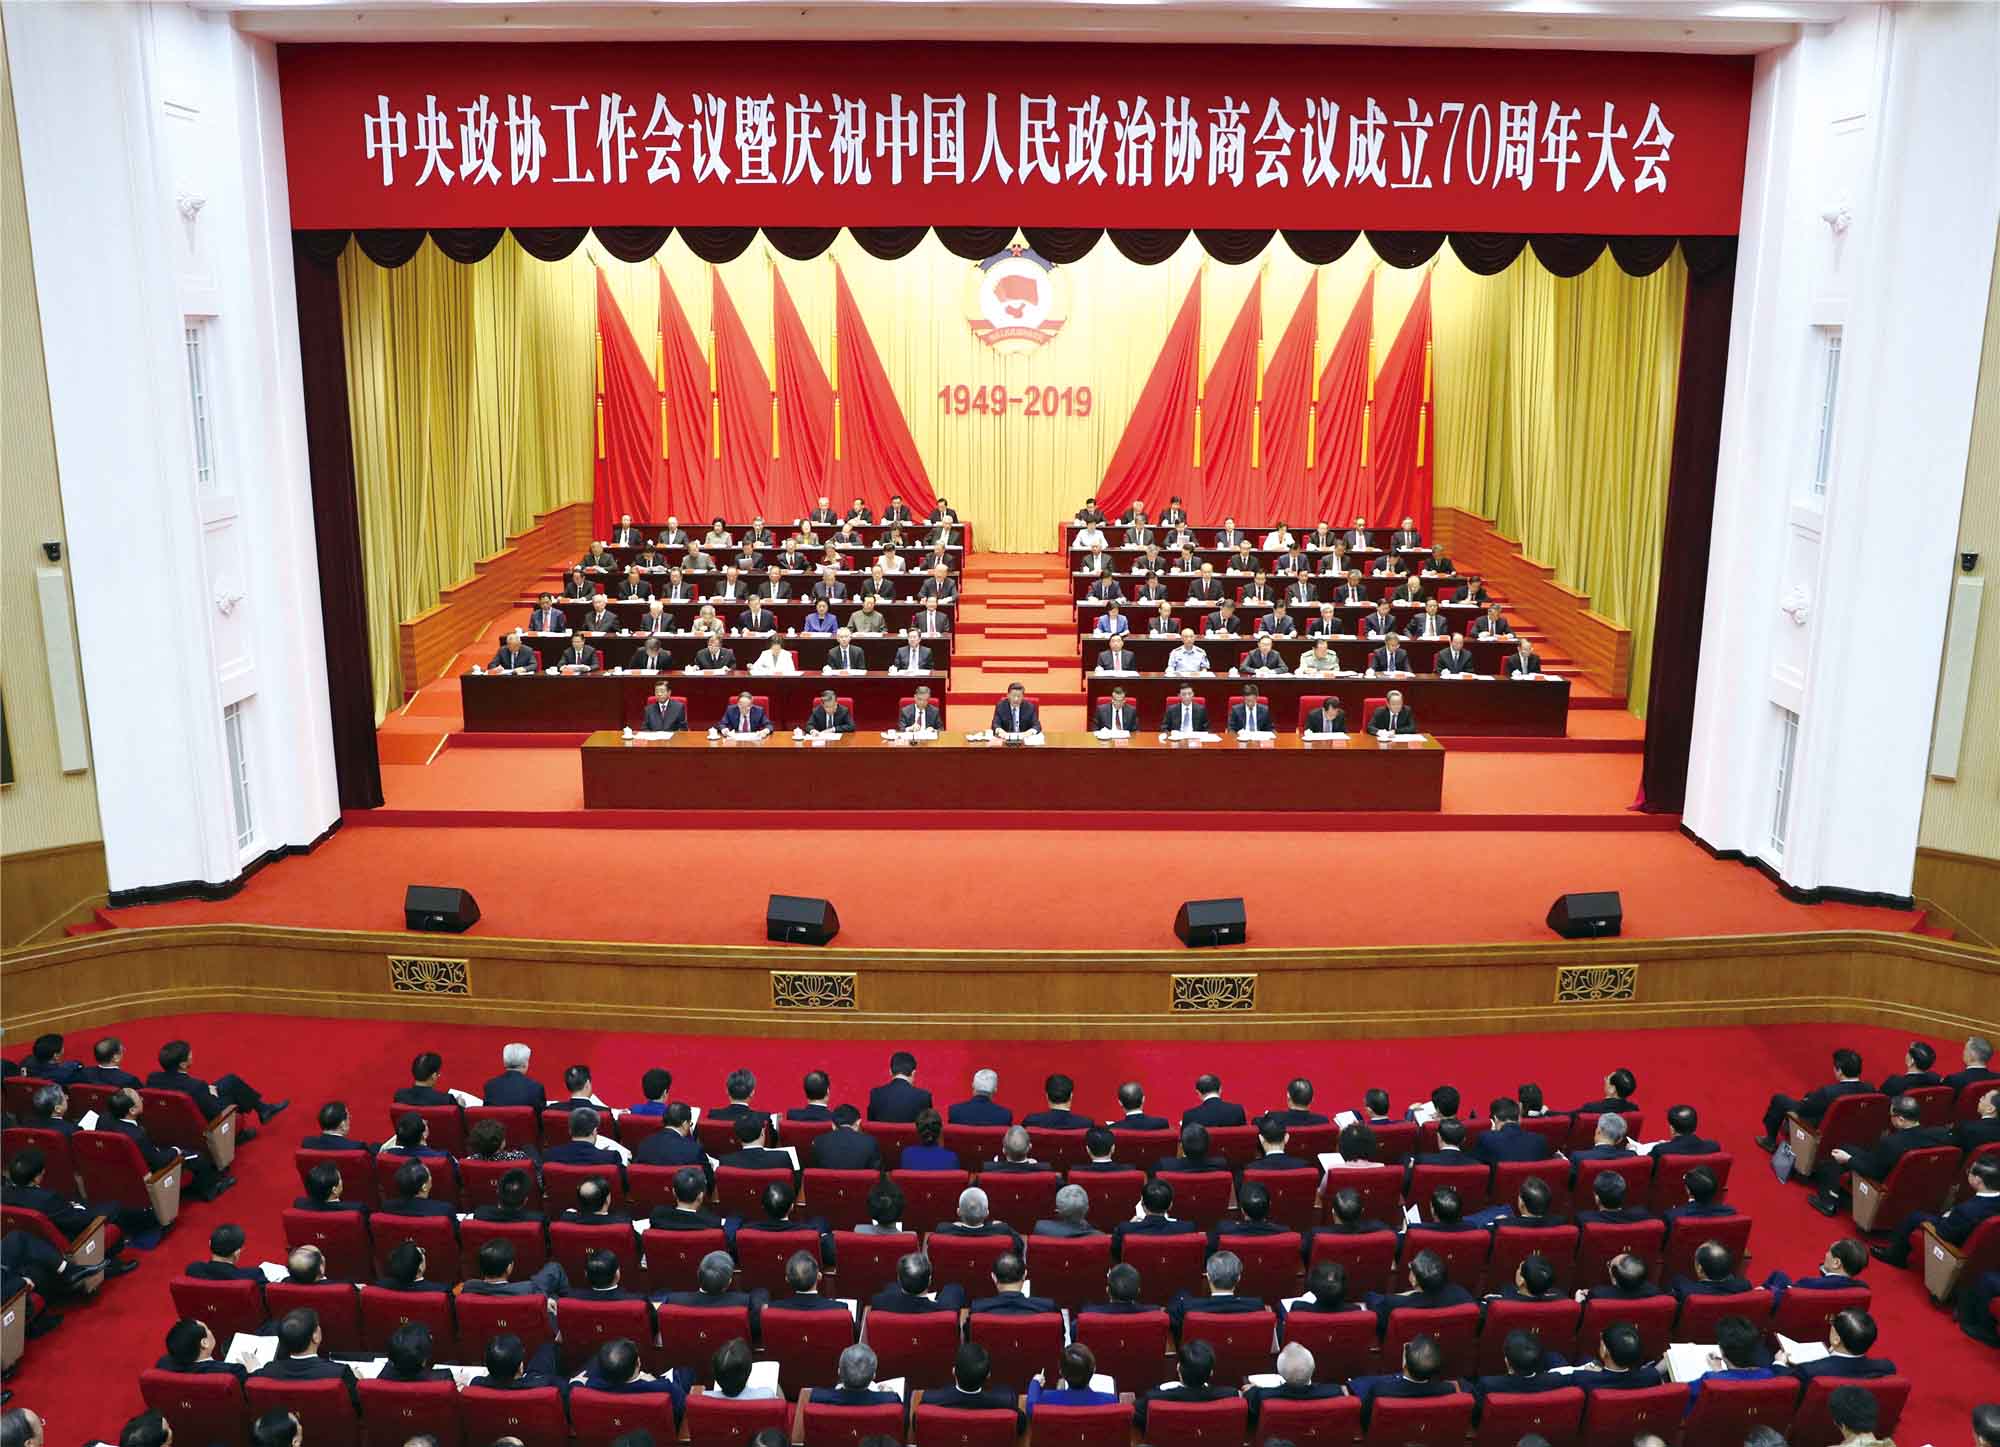 中央政协工作会议暨庆祝中国人民政治协商会议成立70周年大会会场.jpg